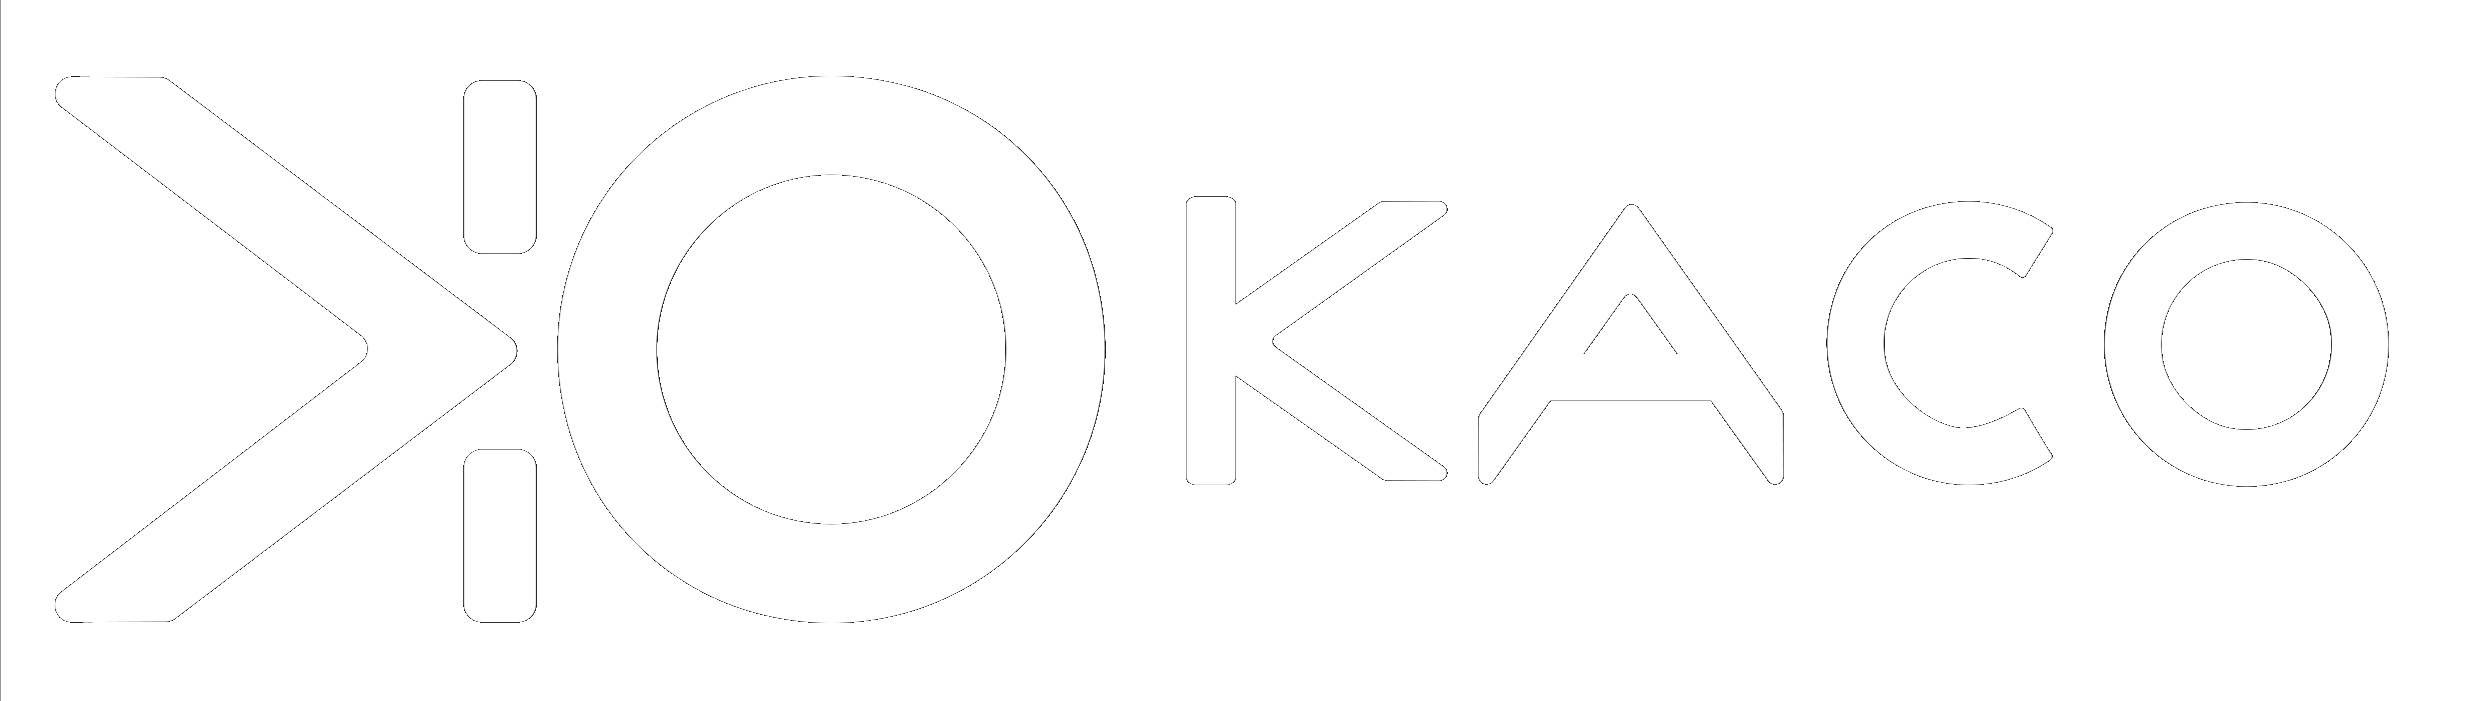 Logo Kaco